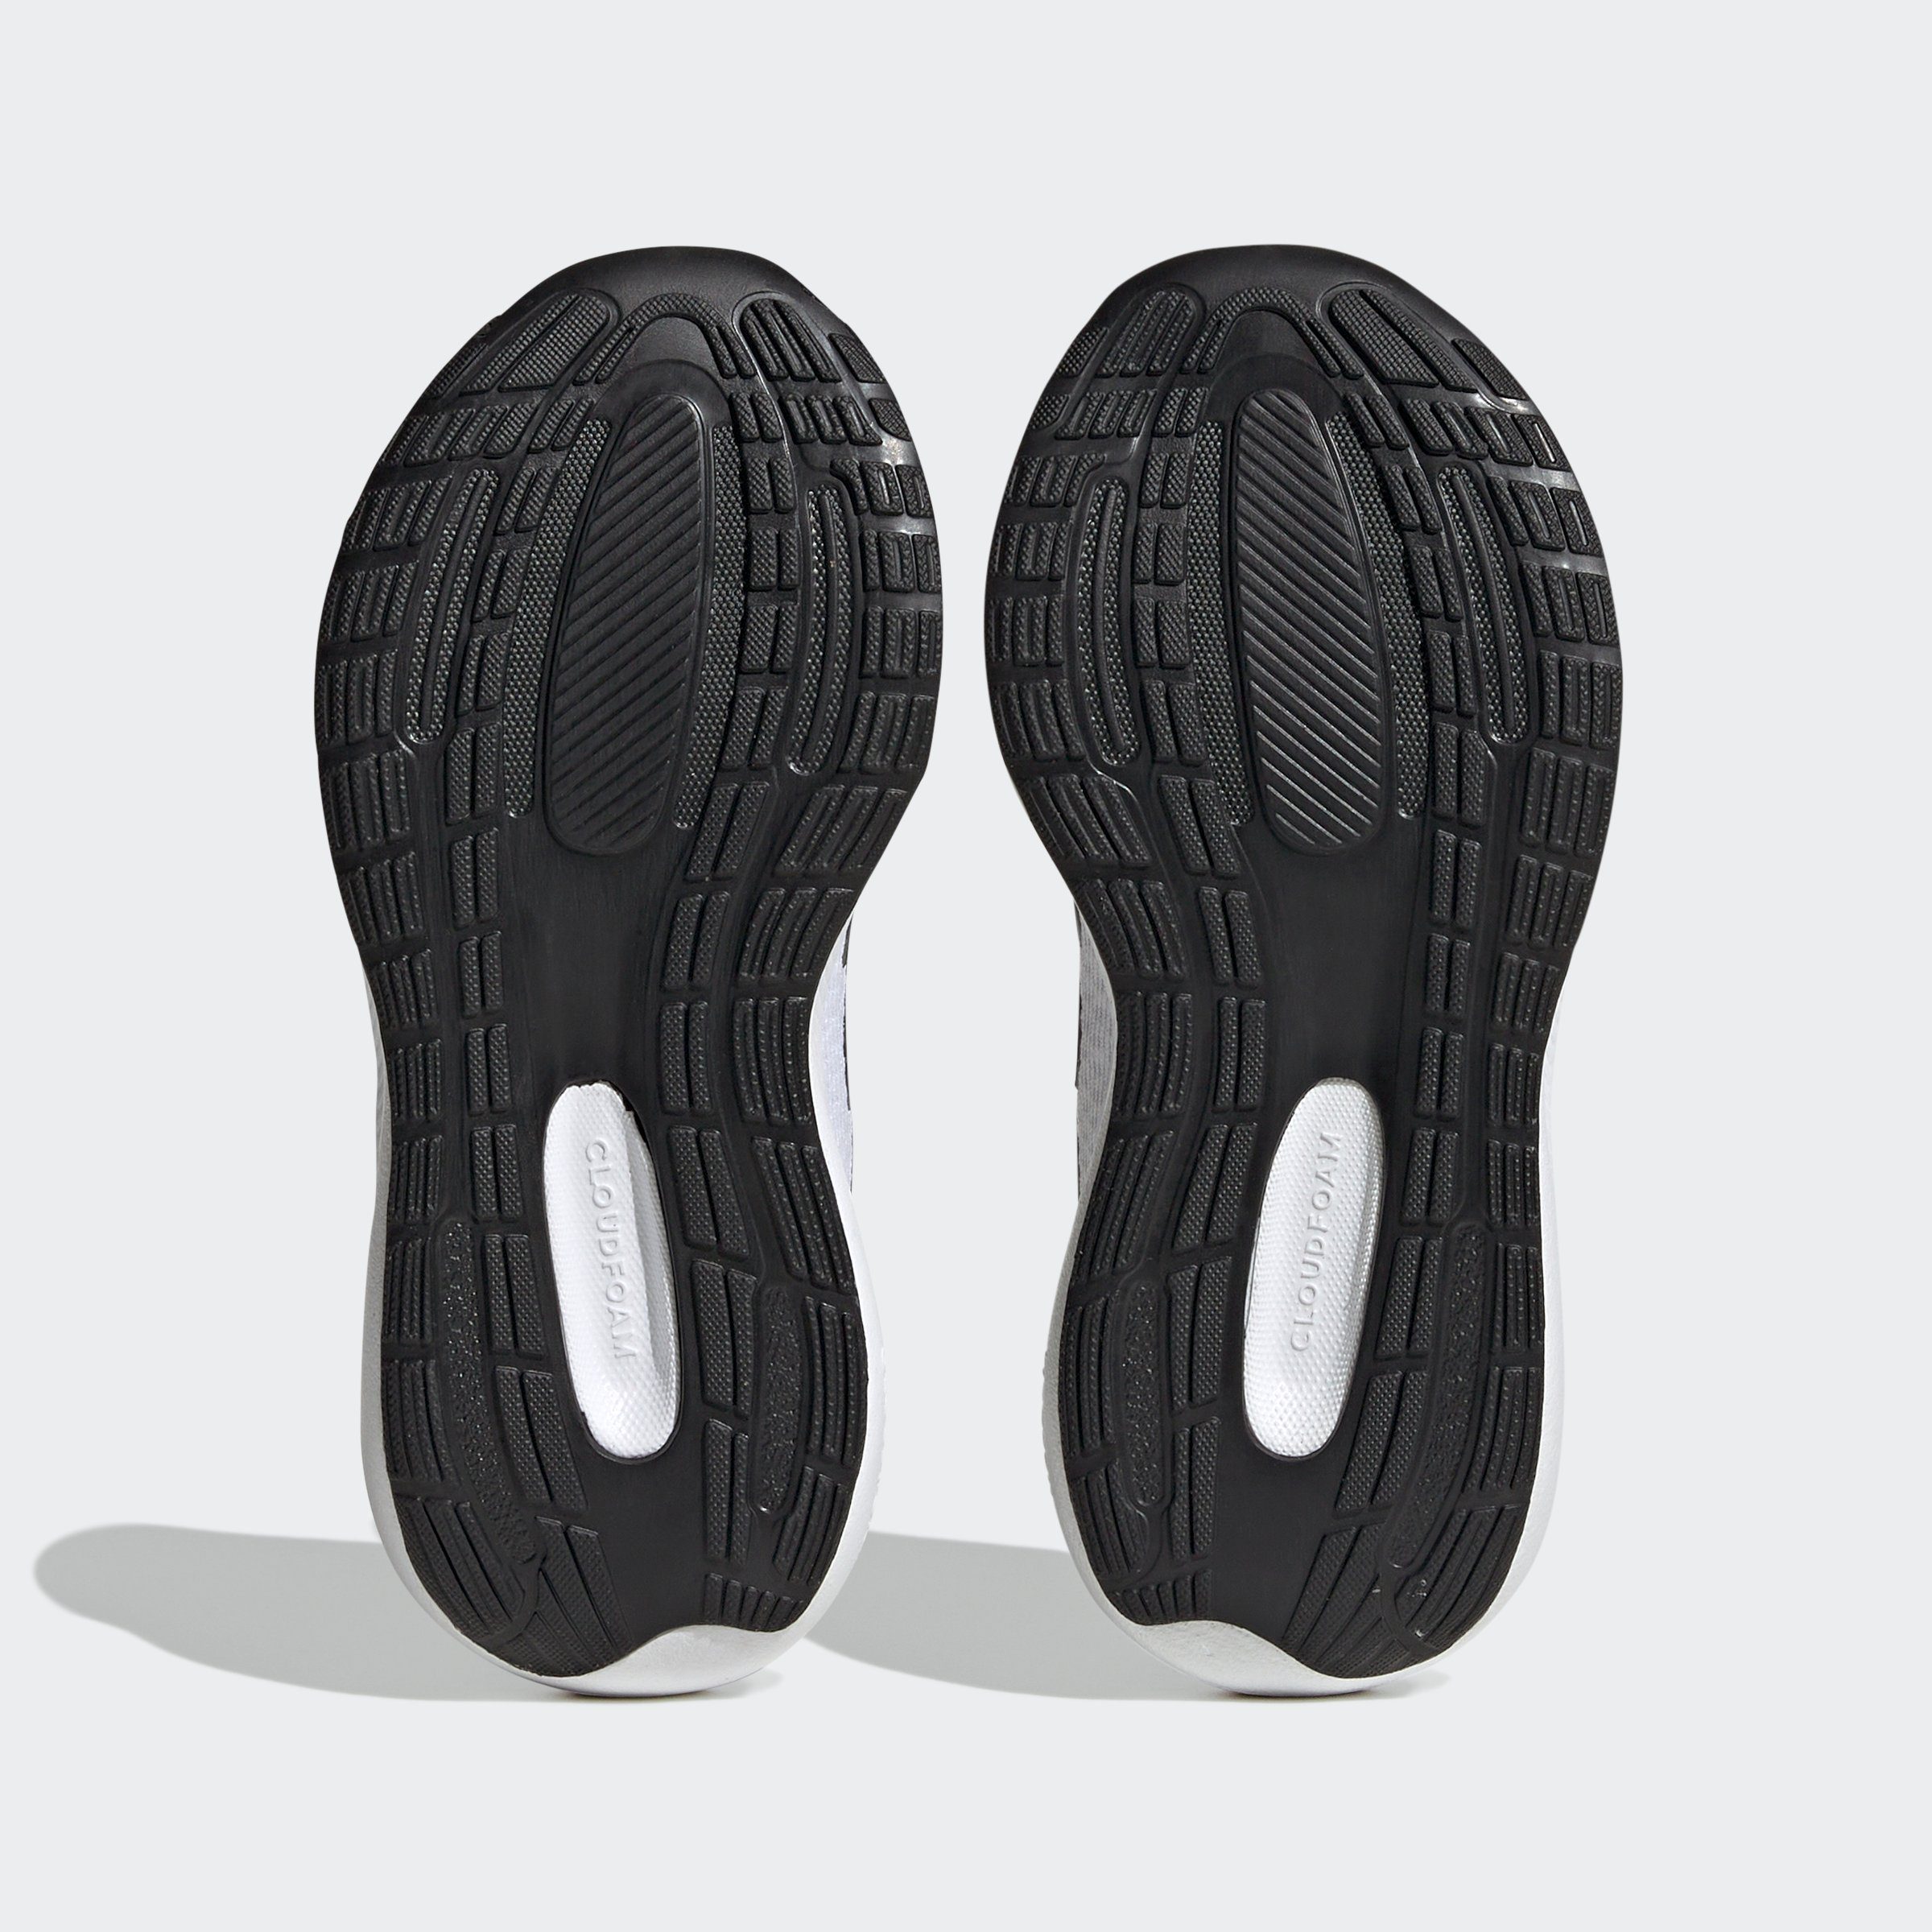 weiß-schwarz 3 Sneaker Sportswear RUNFALCON LACE adidas